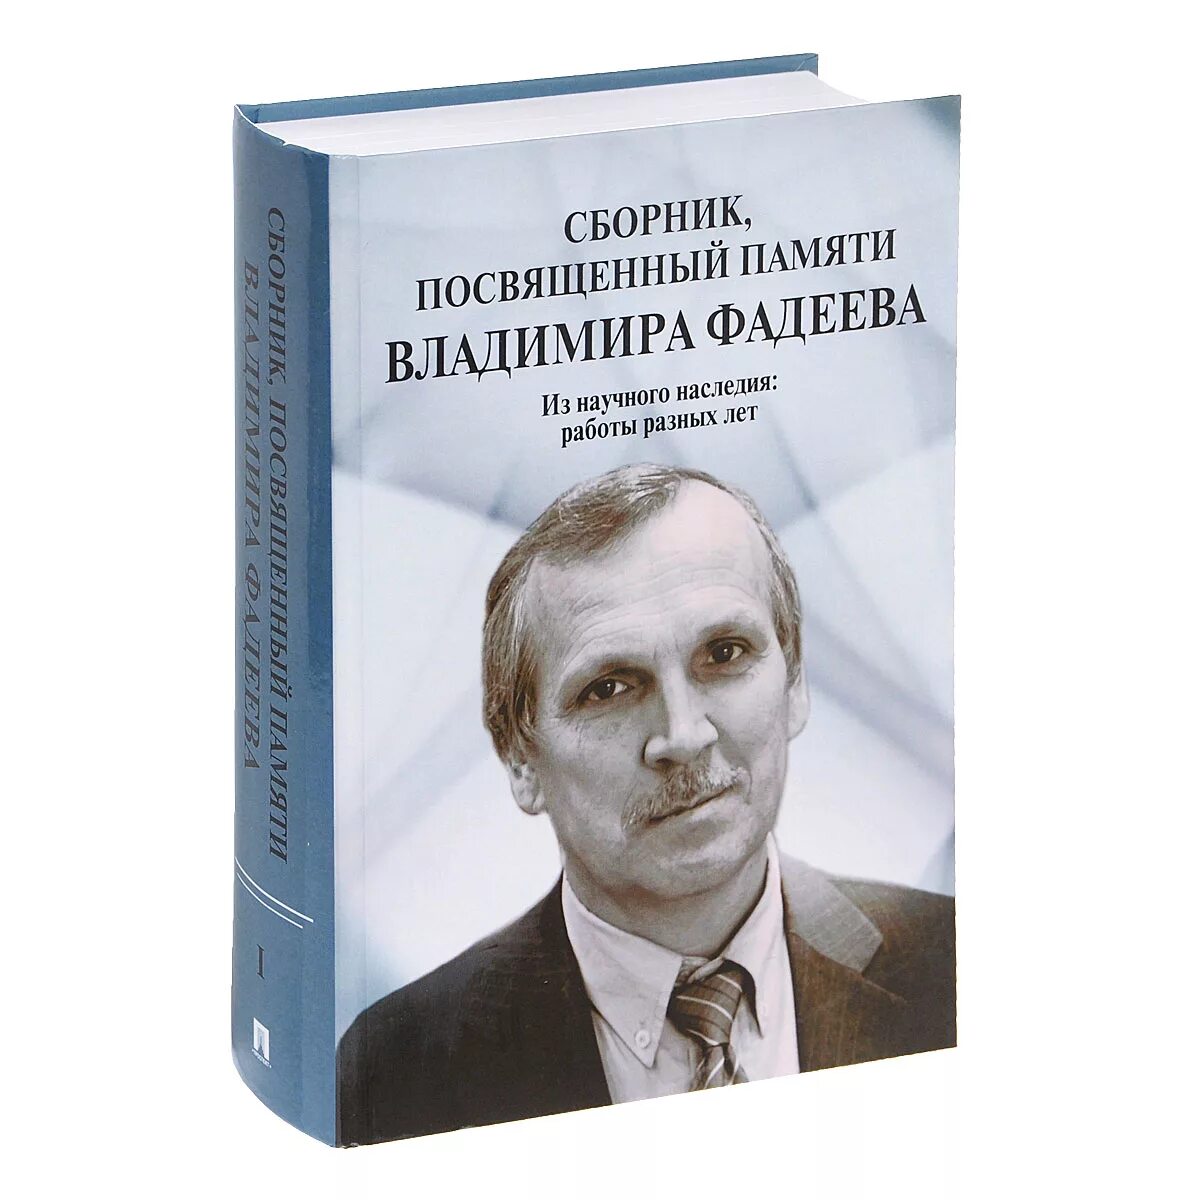 Фадеев Конституционное право. Сборник посвященный памяти